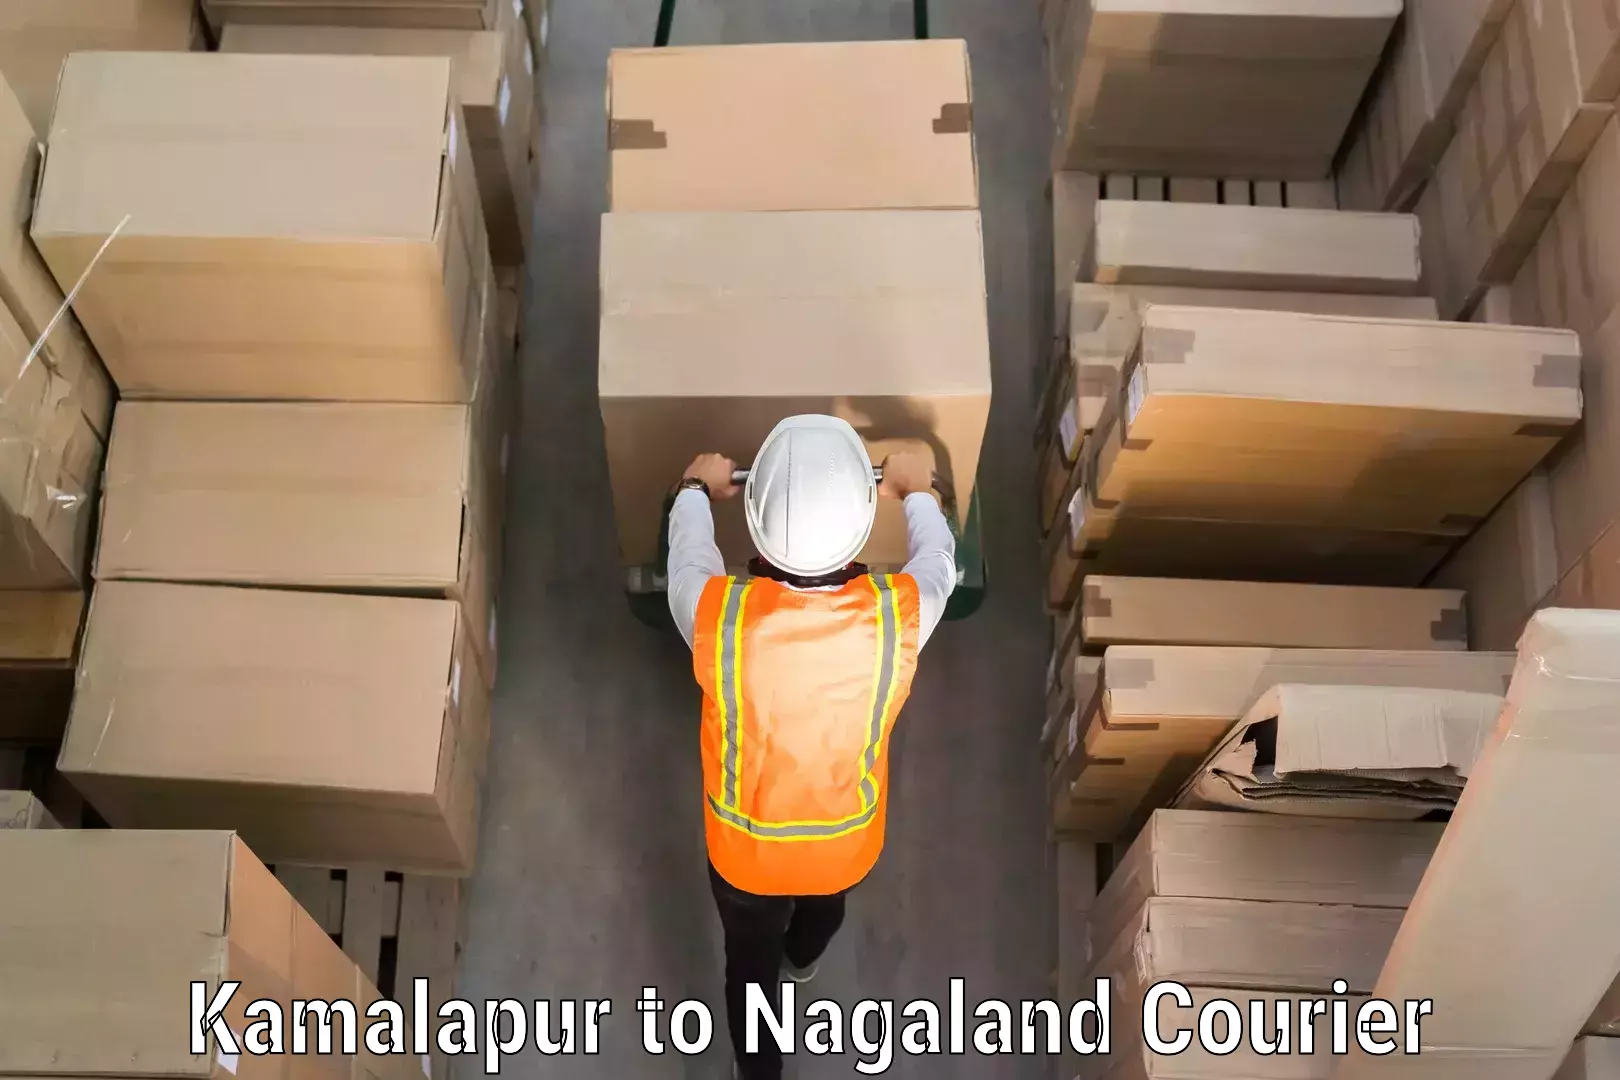 Luggage transport consultancy Kamalapur to Nagaland